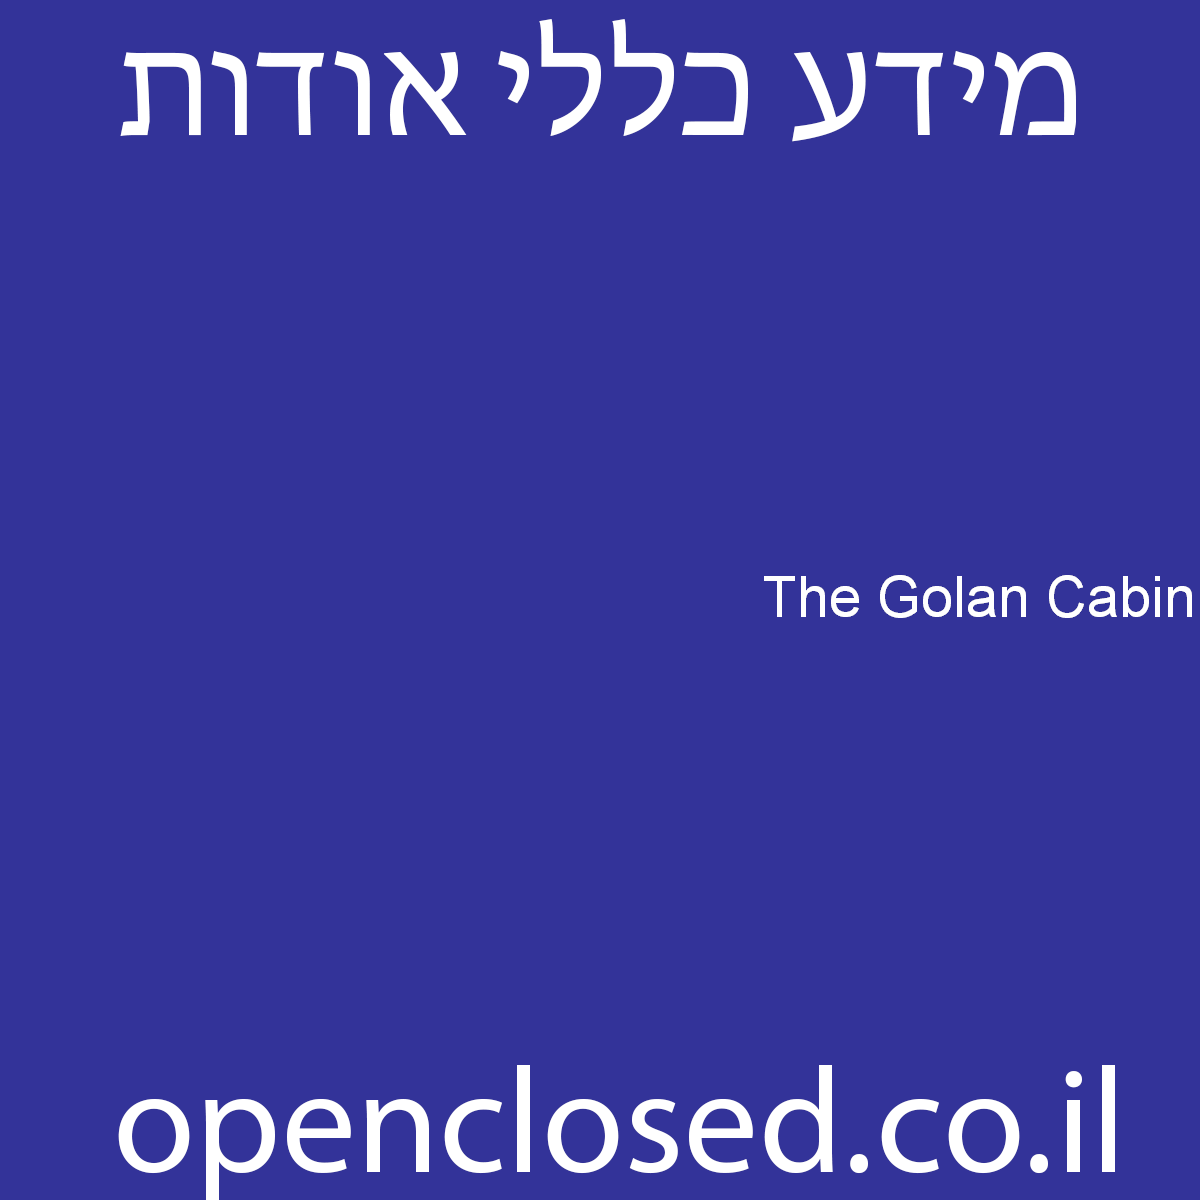 The Golan Cabin